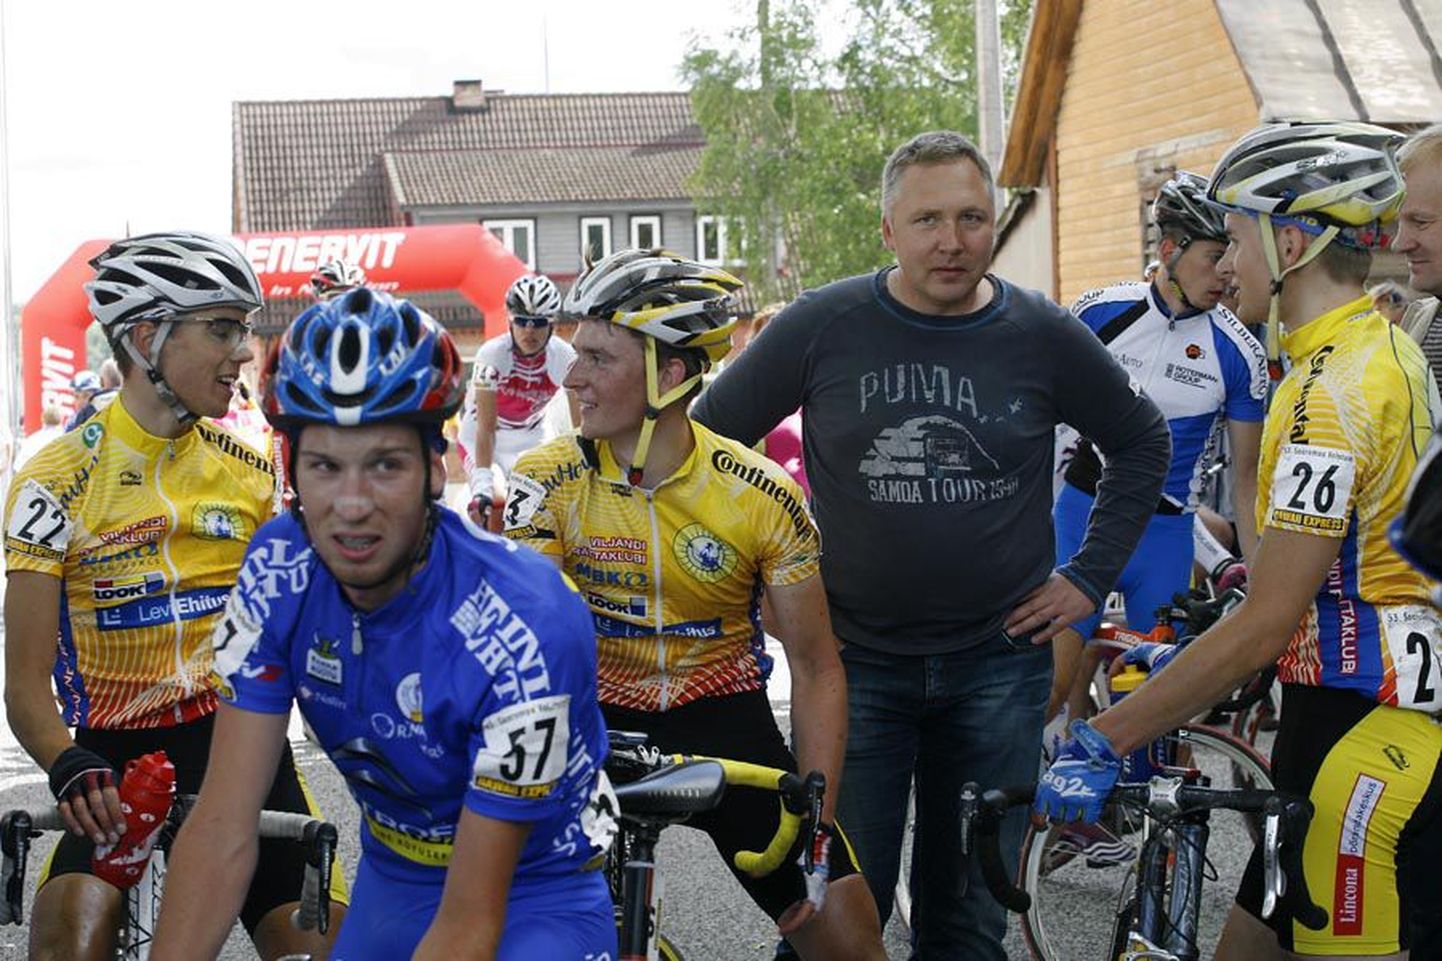 Viljandi linnapea Loit Kivistik on olnud rattaklubi president ning puutunud selles ametis kokku suurürituste korraldamisega.